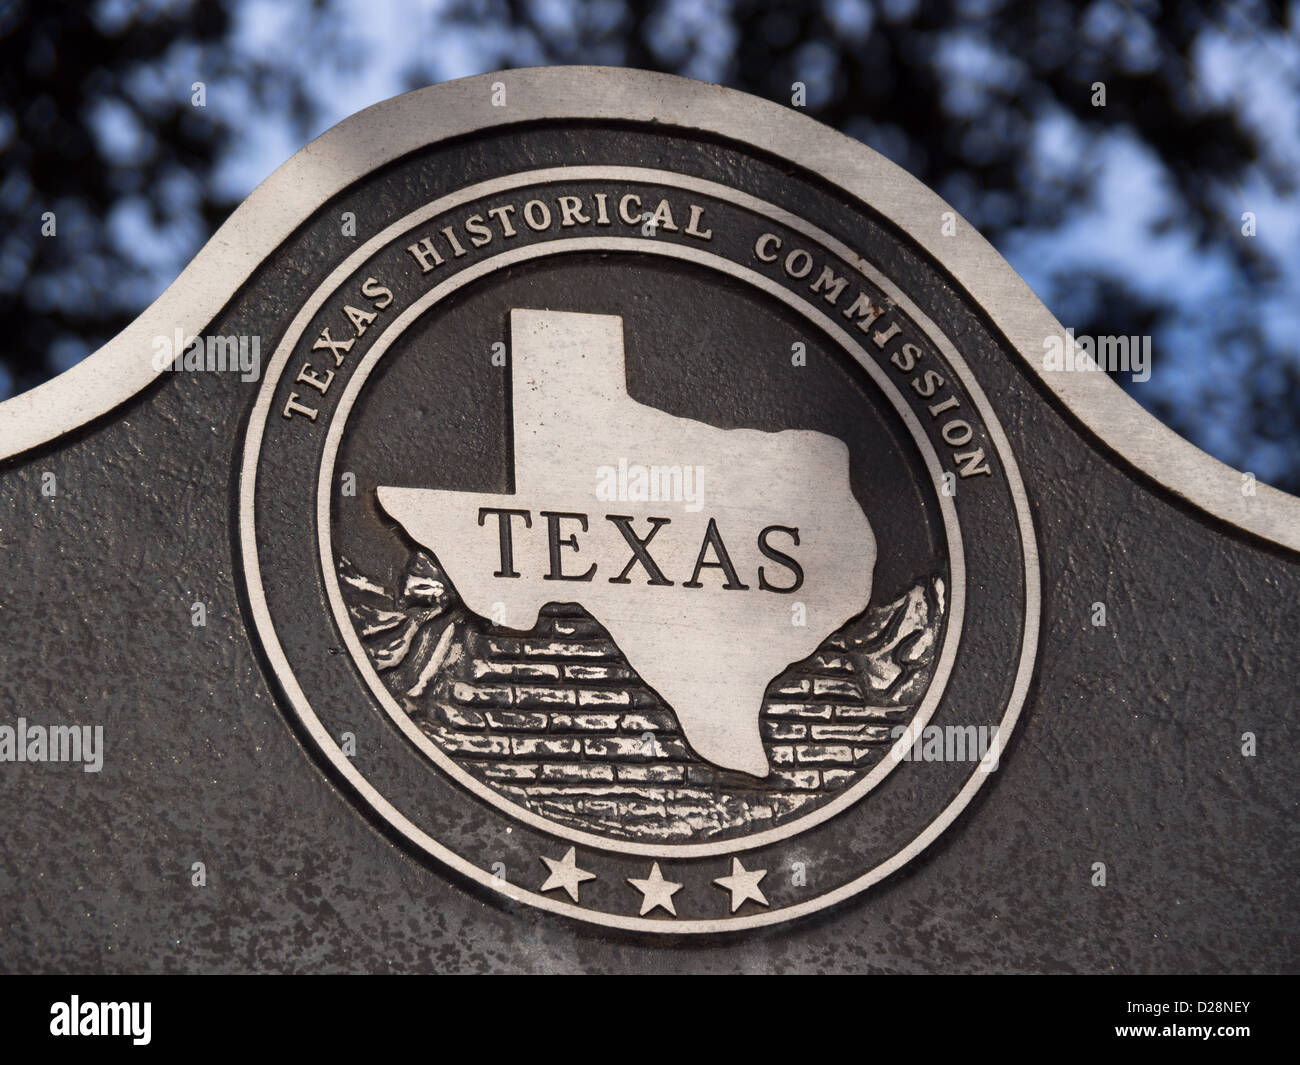 Texas historische Commisdion Zeichen Stockfoto